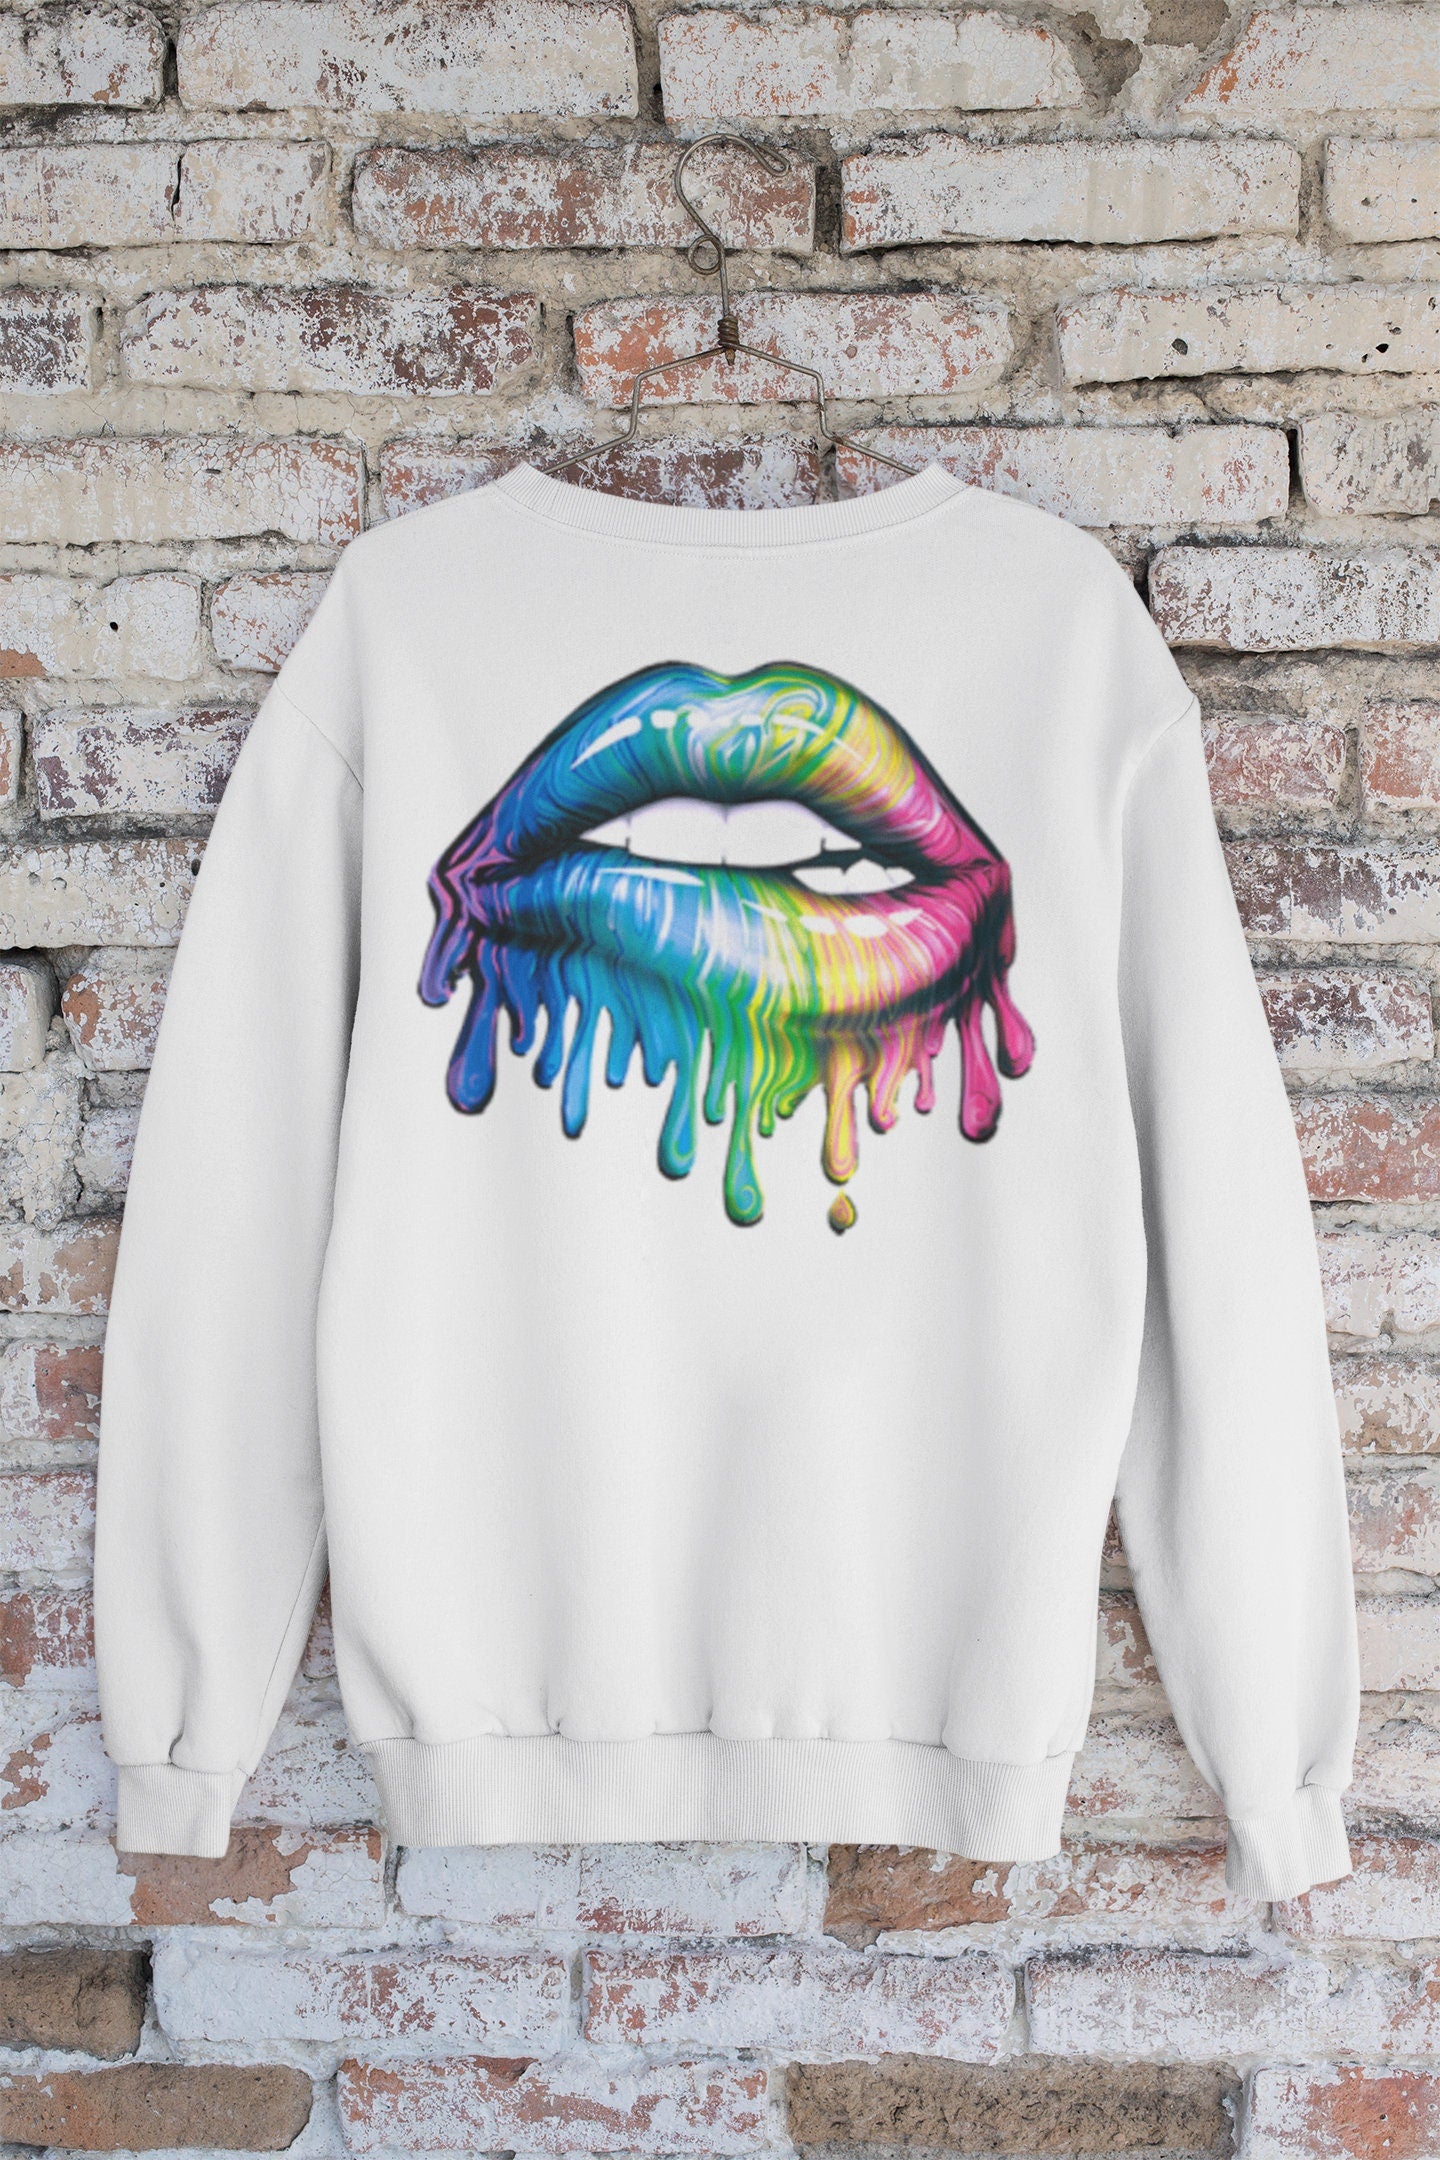 Dripping Lips Multi-Color, Girls Rocker Shirt, Women Party Shirt, Biting Lips